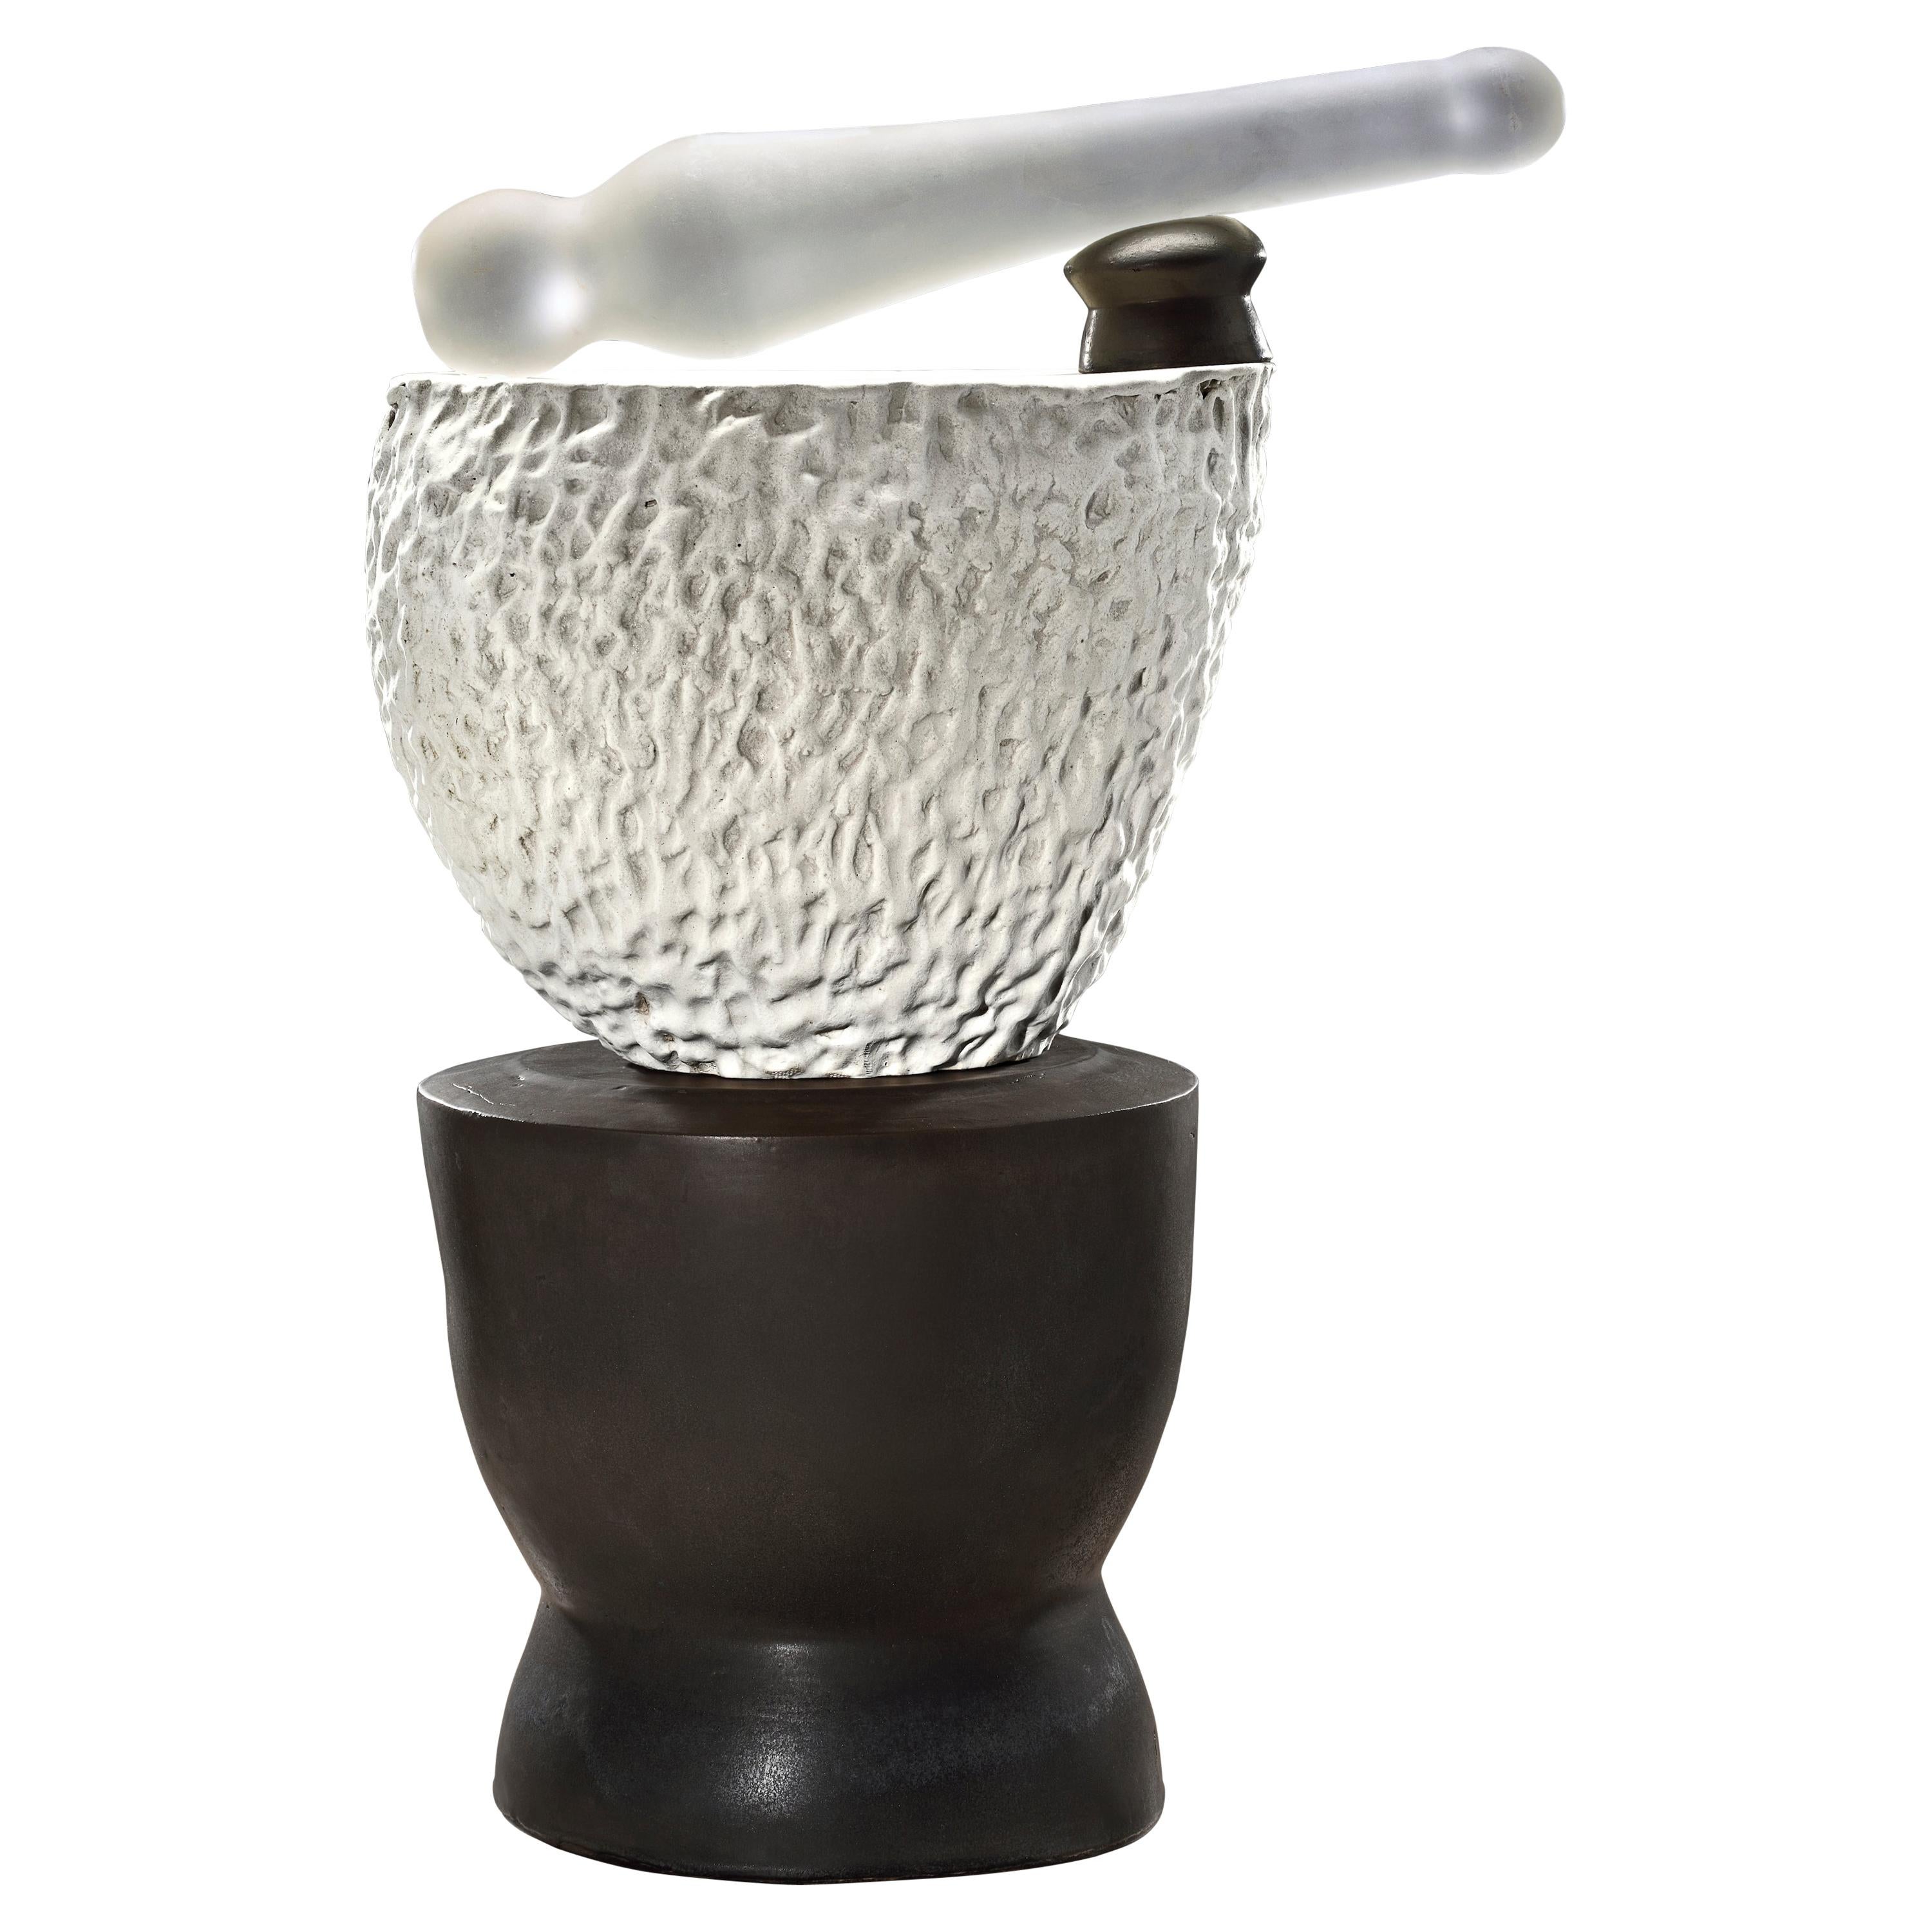 Keramik-Mortar- und Glasspespespespeisen-Skulptur #5 von Richard Hirsch, 2020